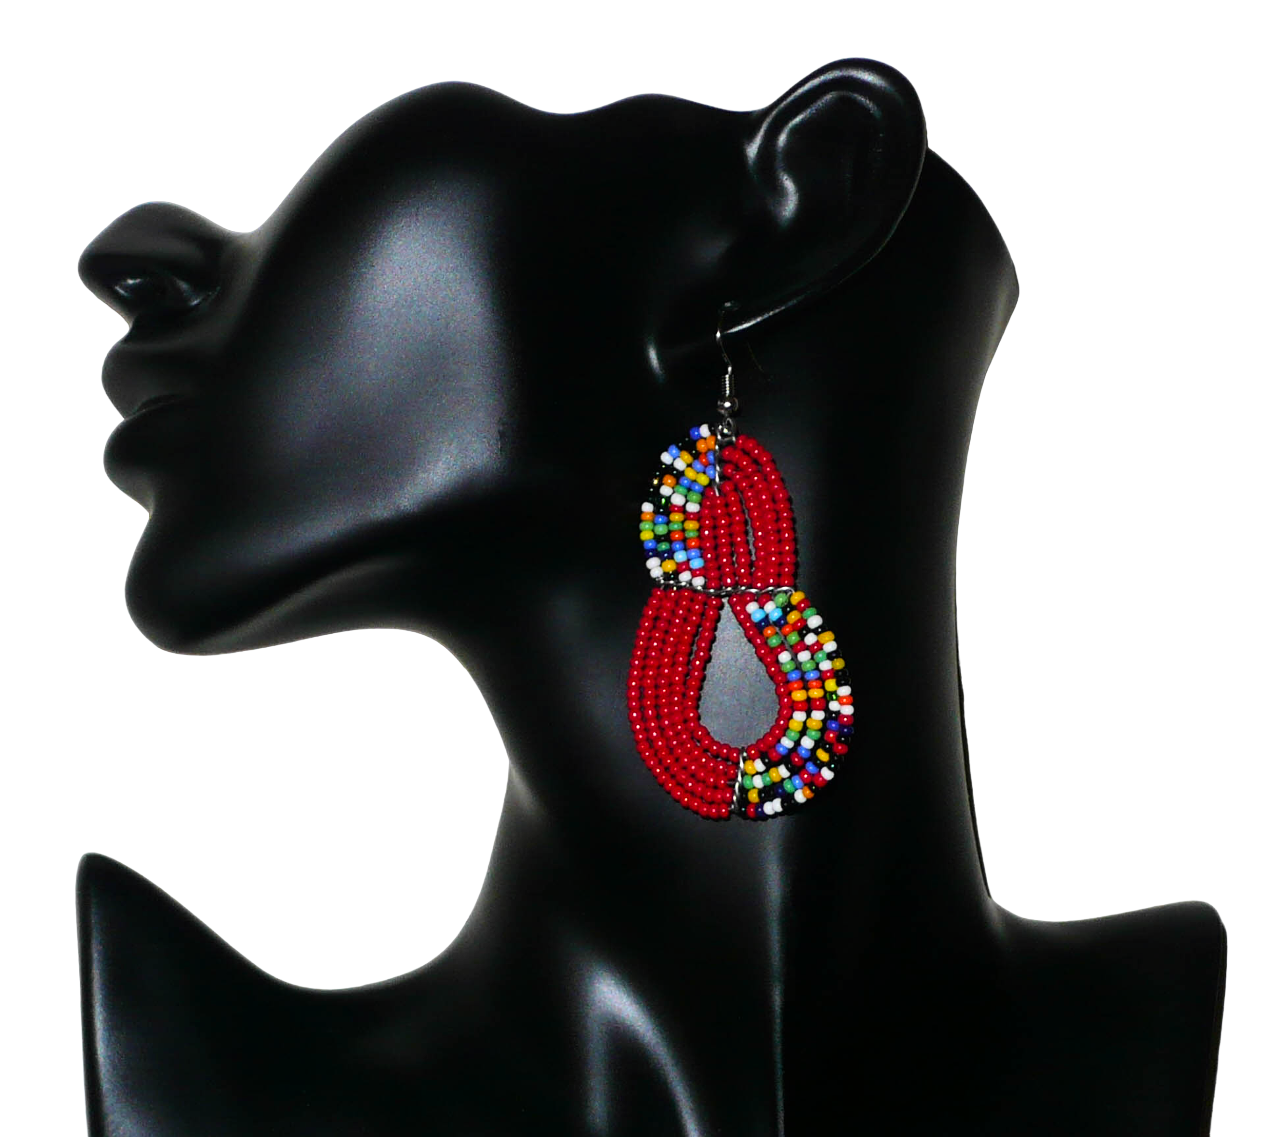 Bijoux kenyans rouges. Boucles d'oreilles ethniques composées de perles de rocaille rouges et d'un mélange de perles multicolores enfilées sur cinq rangées de fils de fer montés en forme de poires. Elles mesurent 7,5 cm de long et 4 cm de large et se portent sur des oreilles percées.